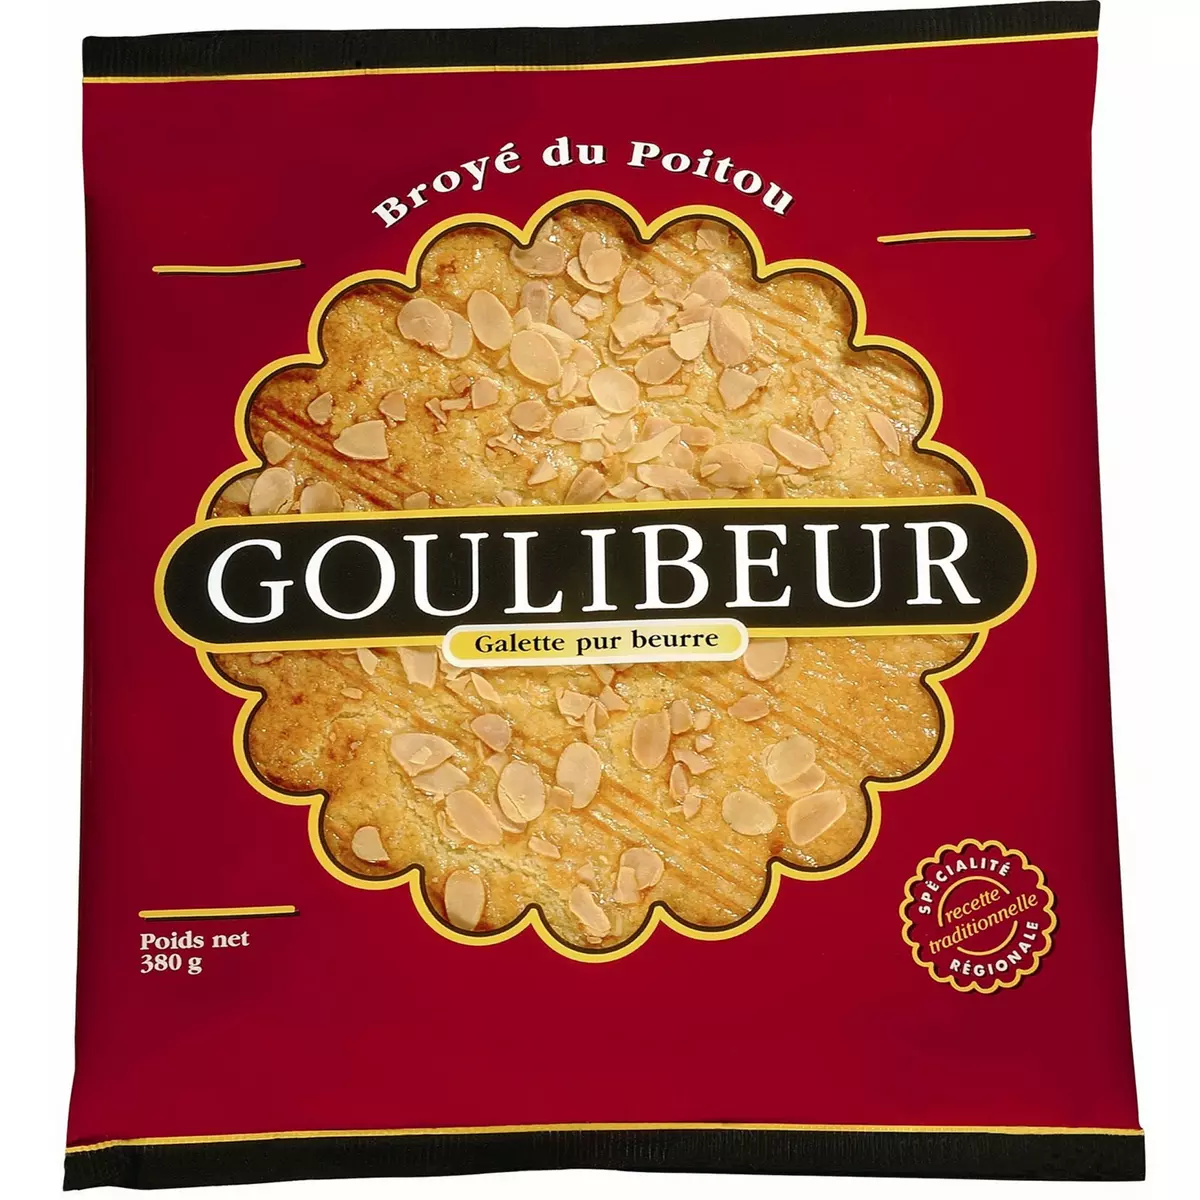 GOULIBEUR Broyé du Poitou galette pur beurre 380g